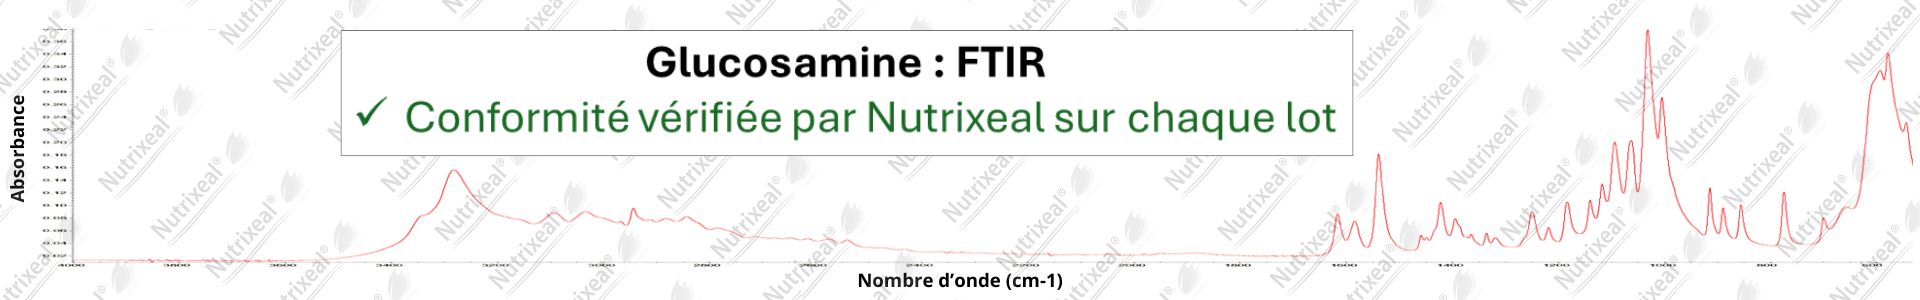 spectrométrie FTIR de la glucosamine